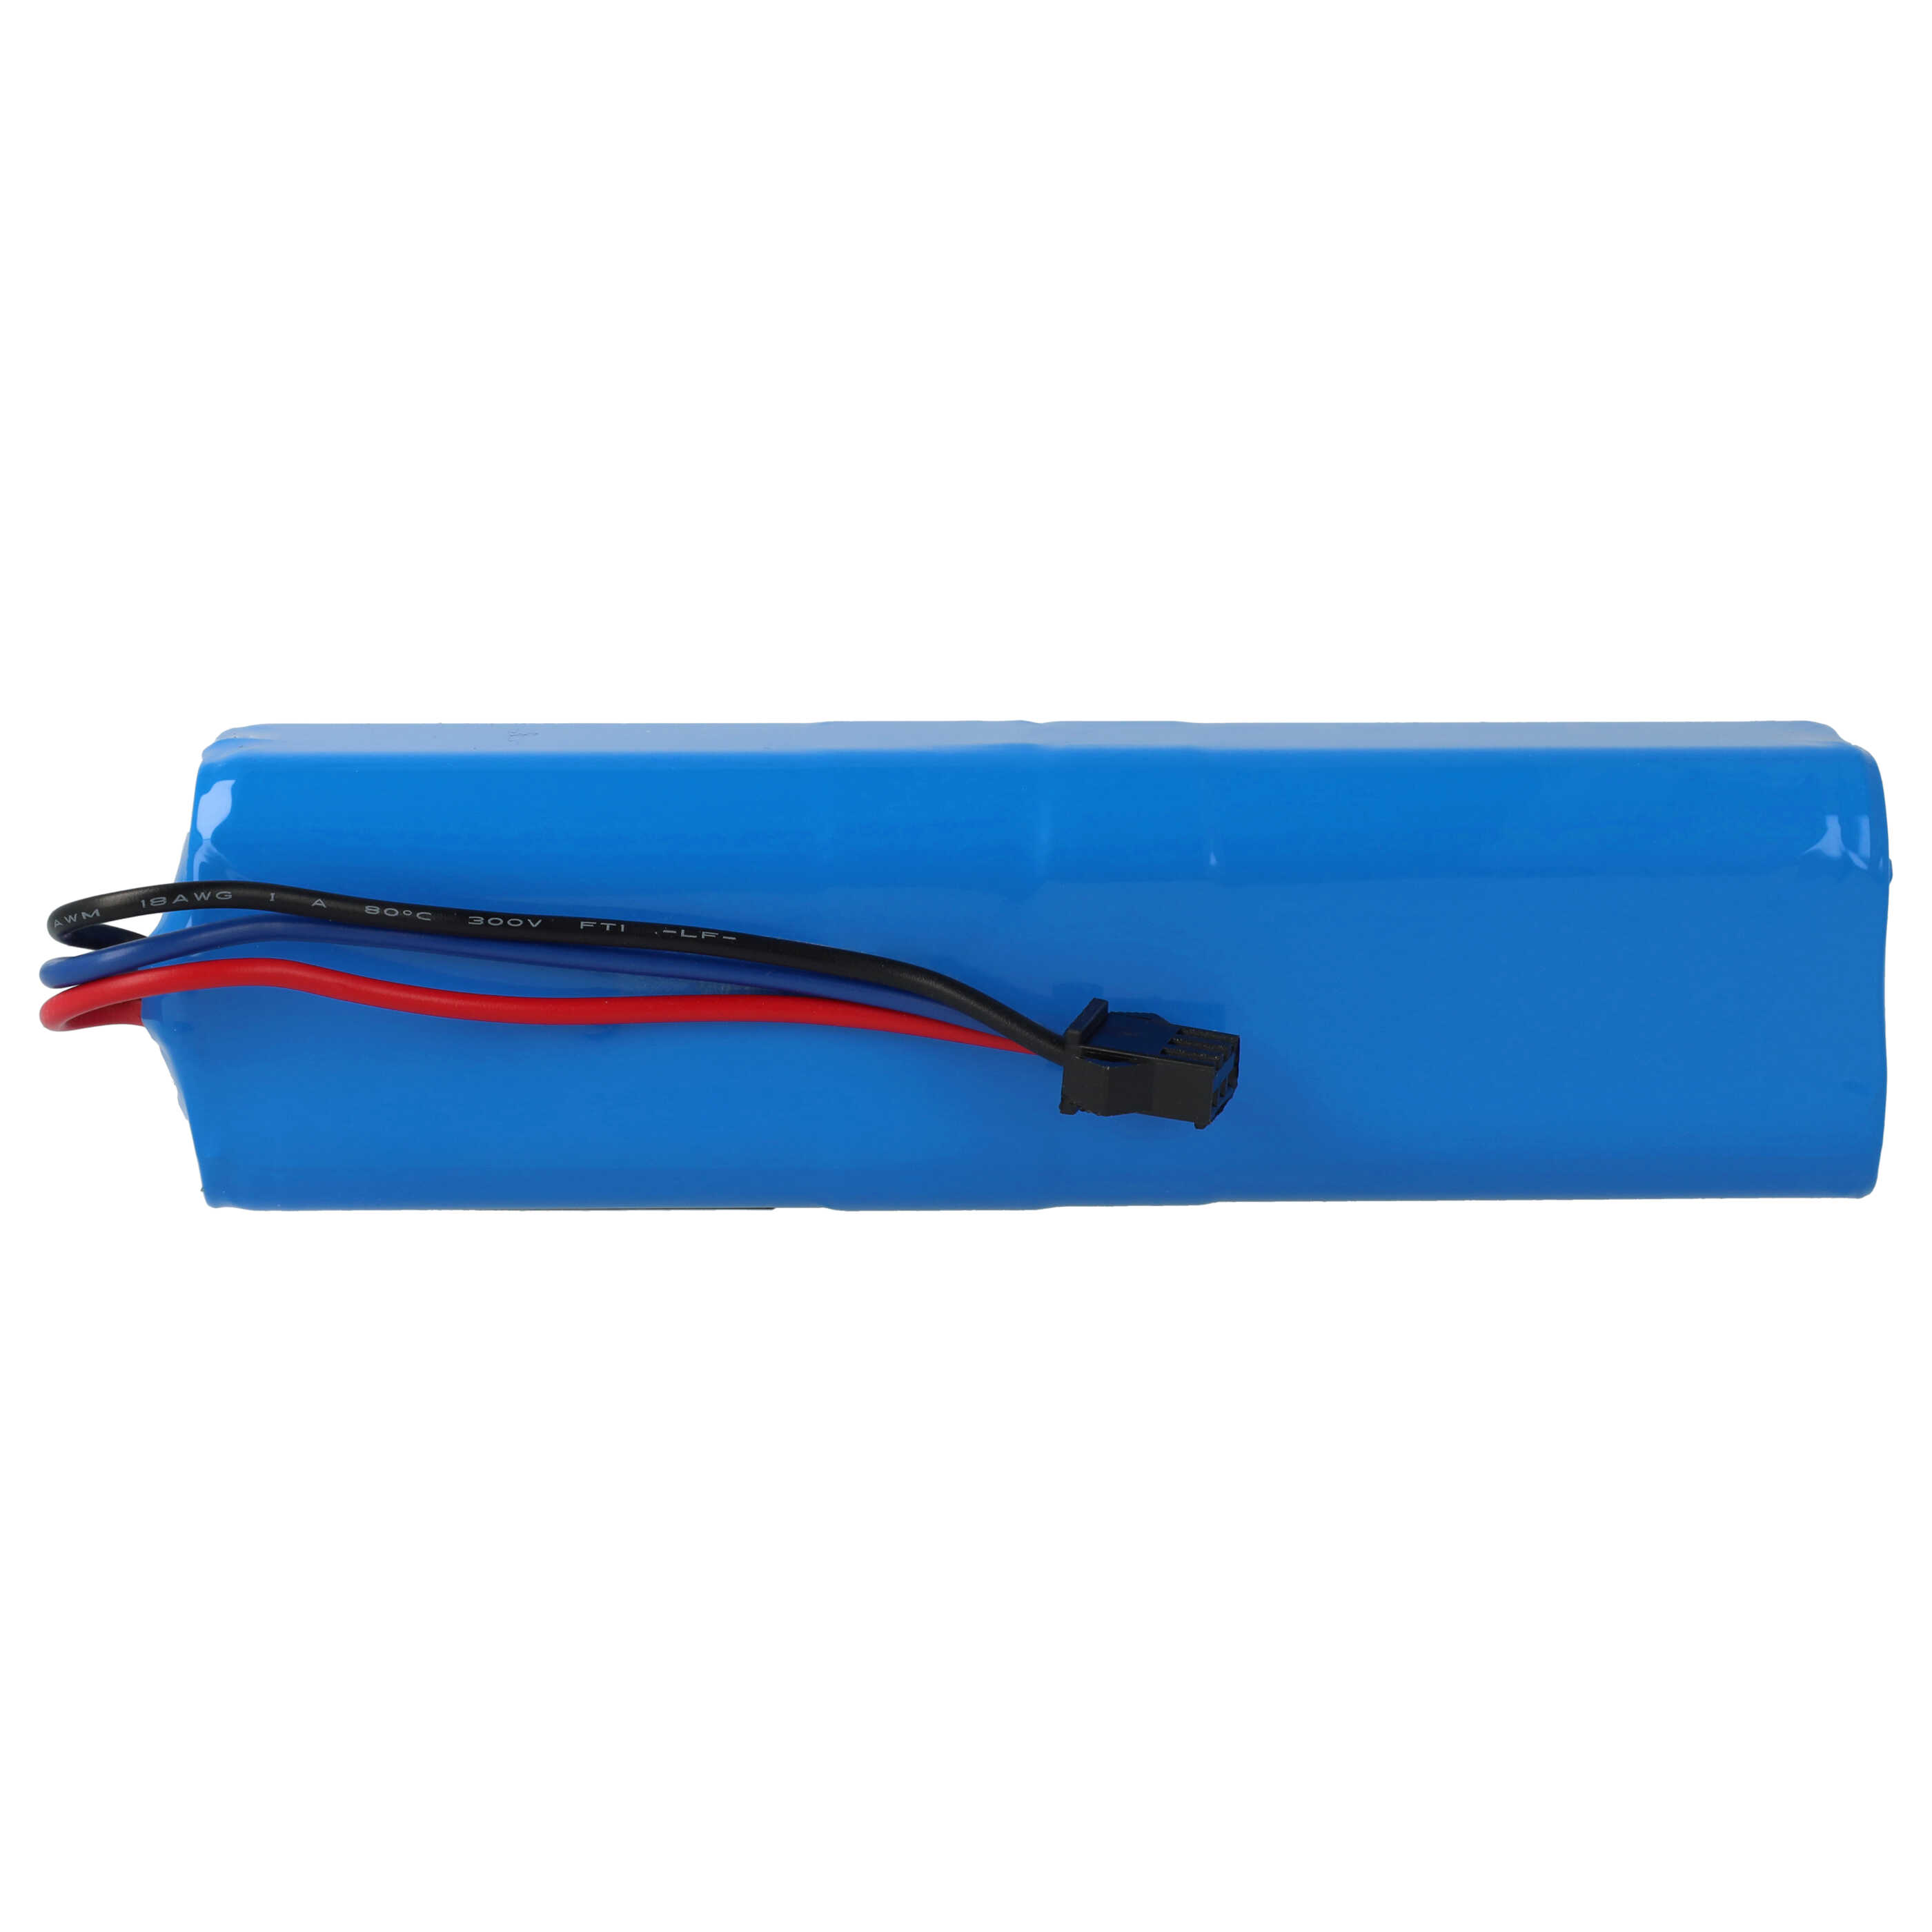 Batería reemplaza Blaupunkt 6.60.40.01-0 para aspiradora Blaupunkt - 5200 mAh 14,4 V Li-Ion